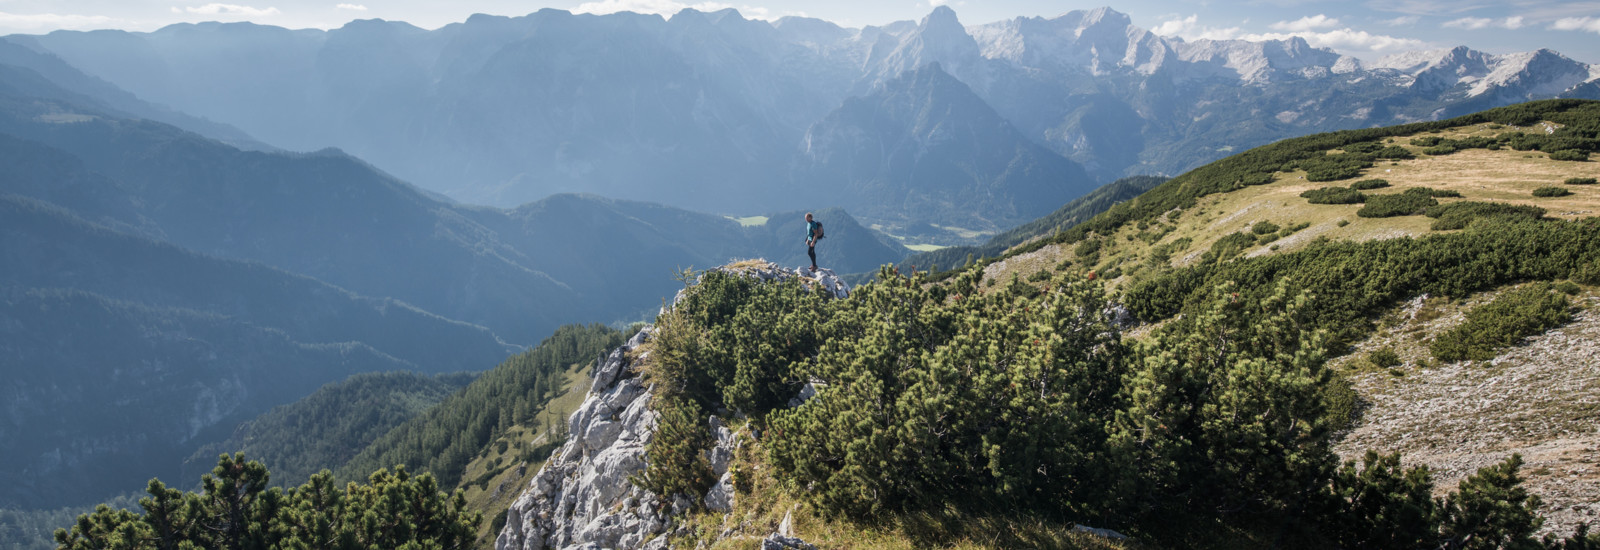 Hegyi túrázás a Pyhrn-Priel üdülőrégióban, Felső-Ausztriában